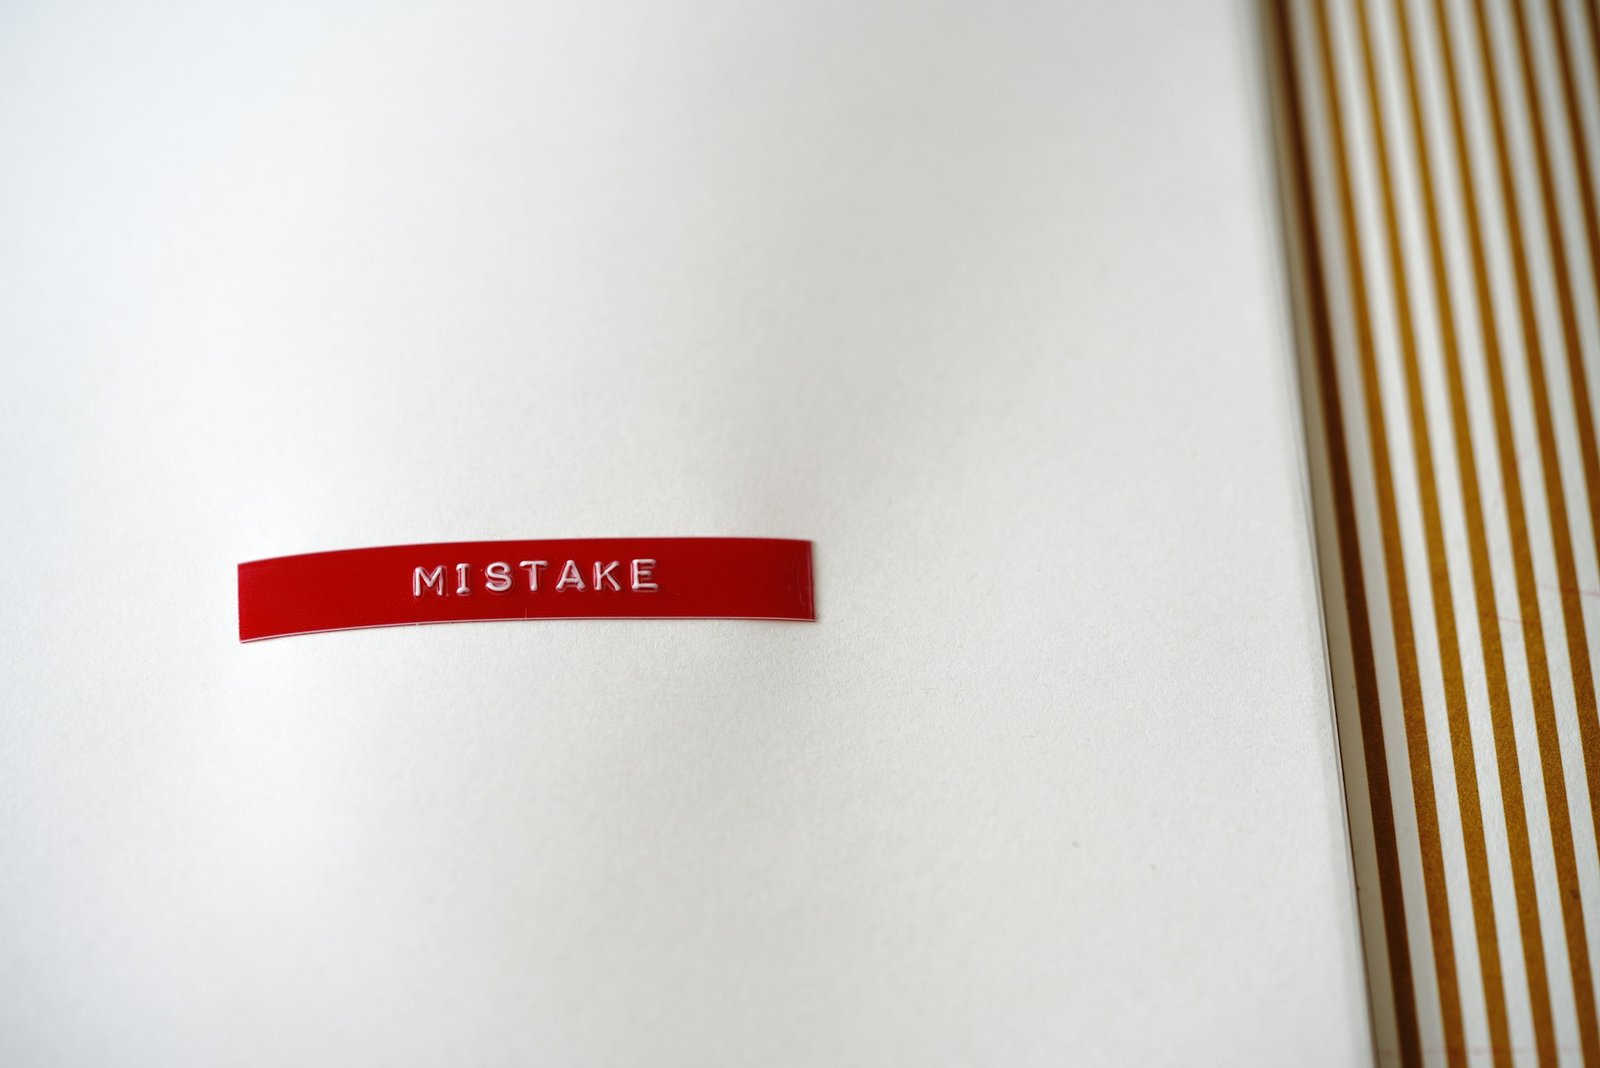 הטעויות הנפוצות ביותר בכתיבת קורות חיים וכיצד להימנע מהן